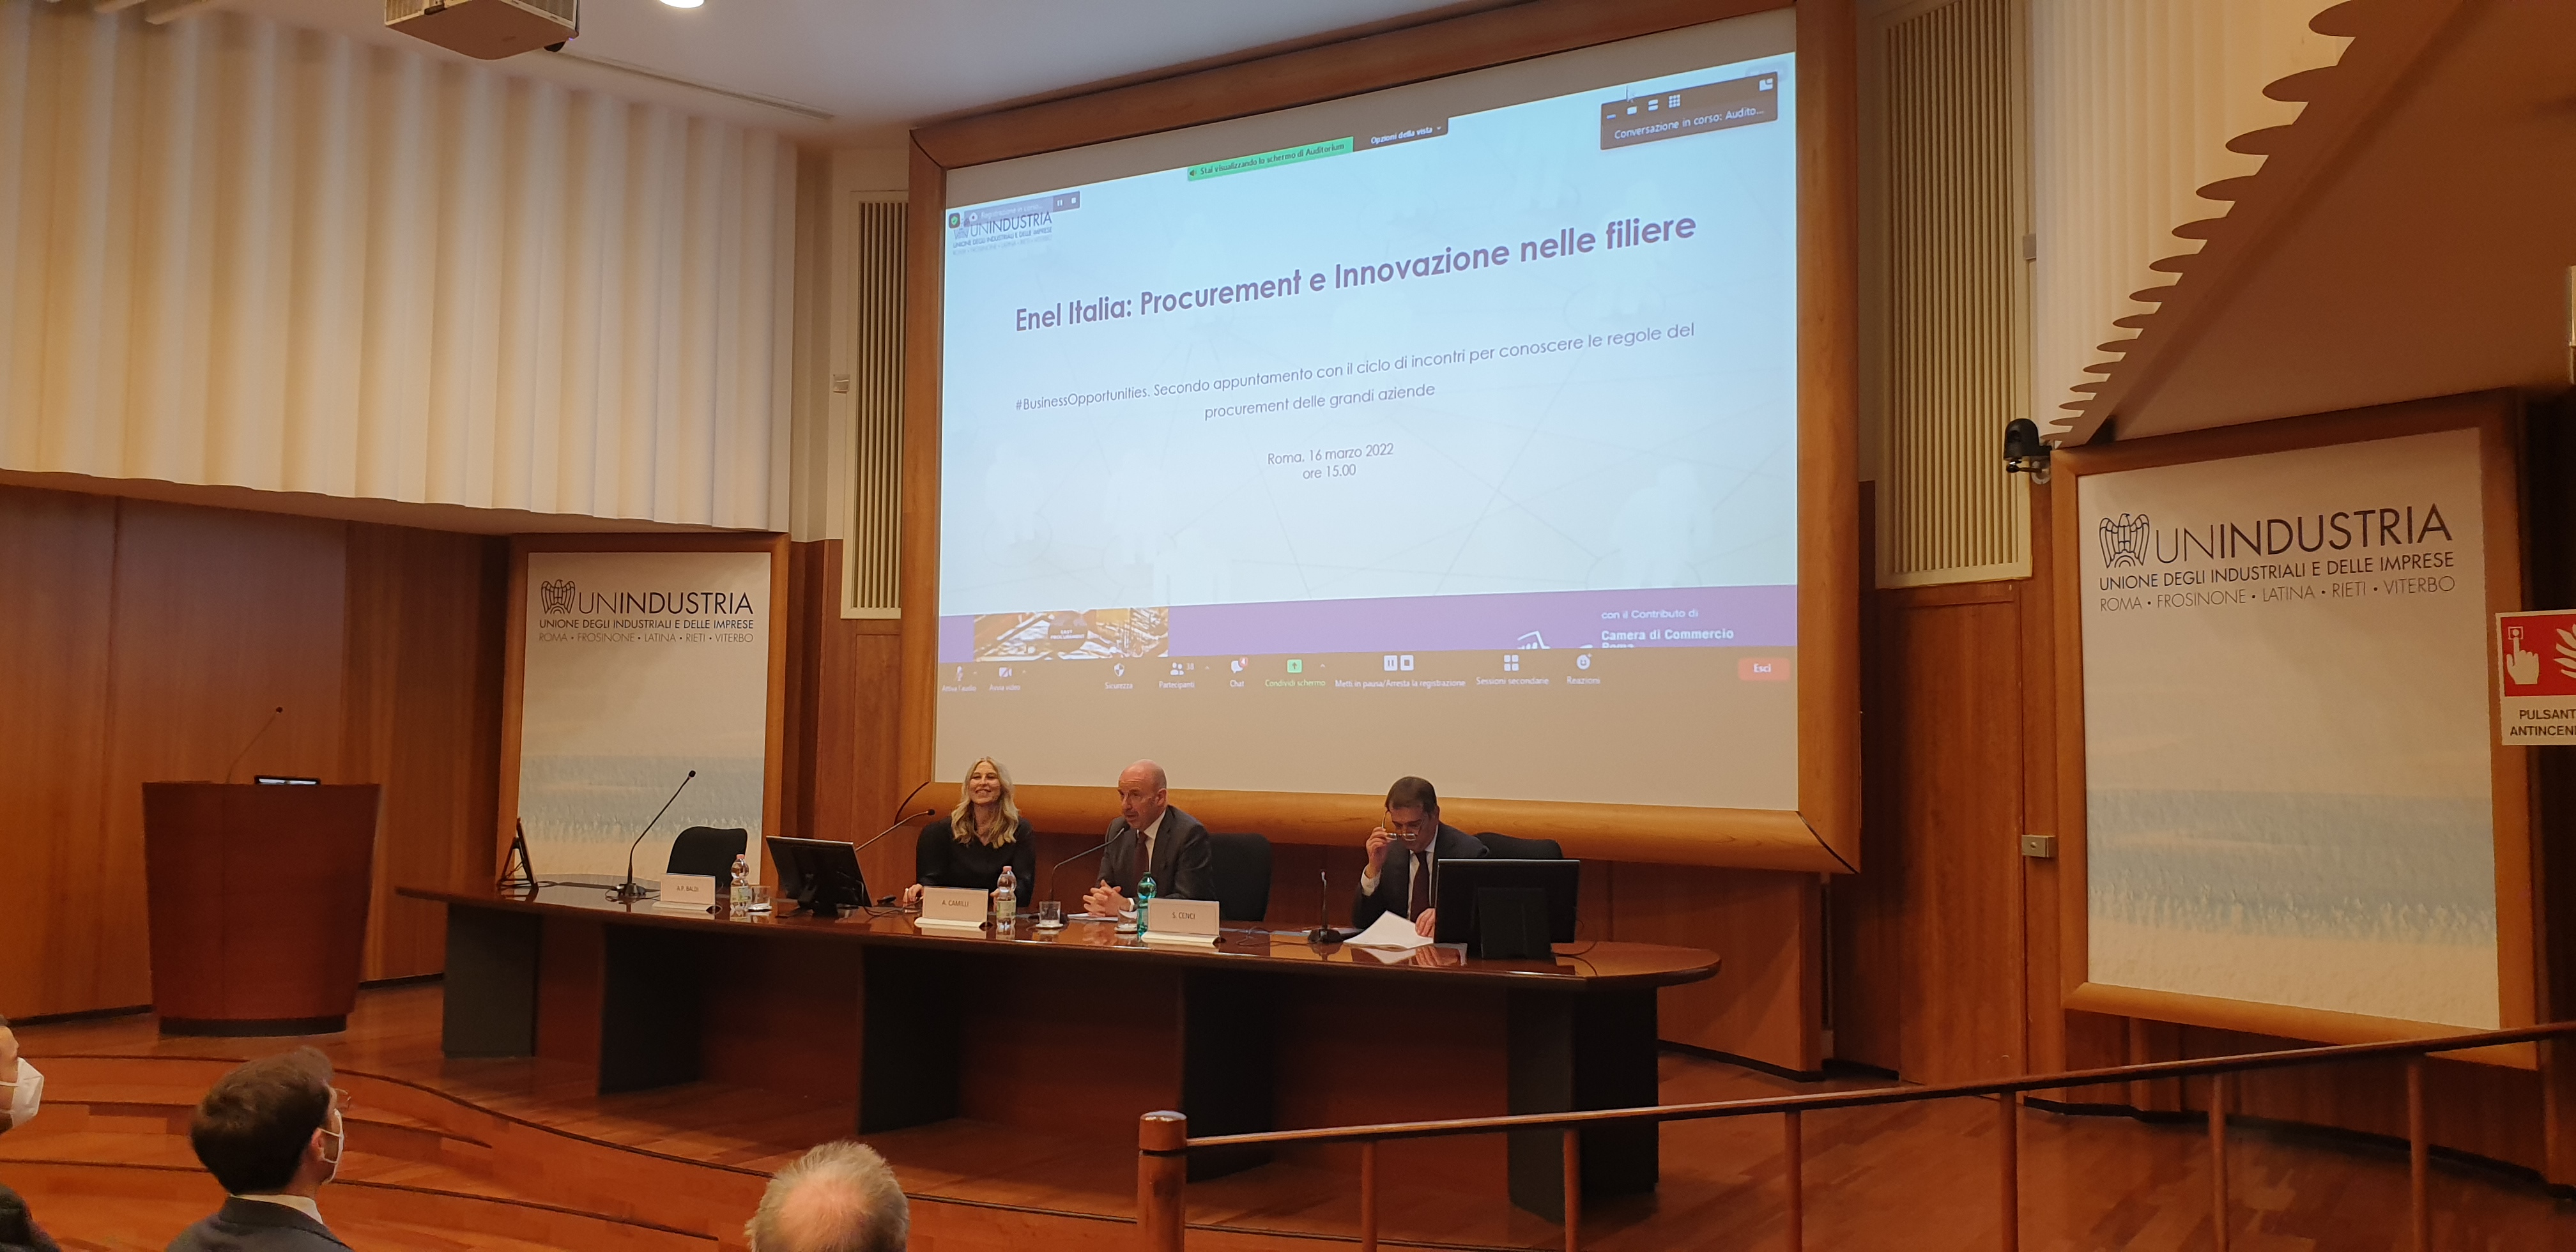 Enel Italia: Procurement e Innovazione nelle filiere